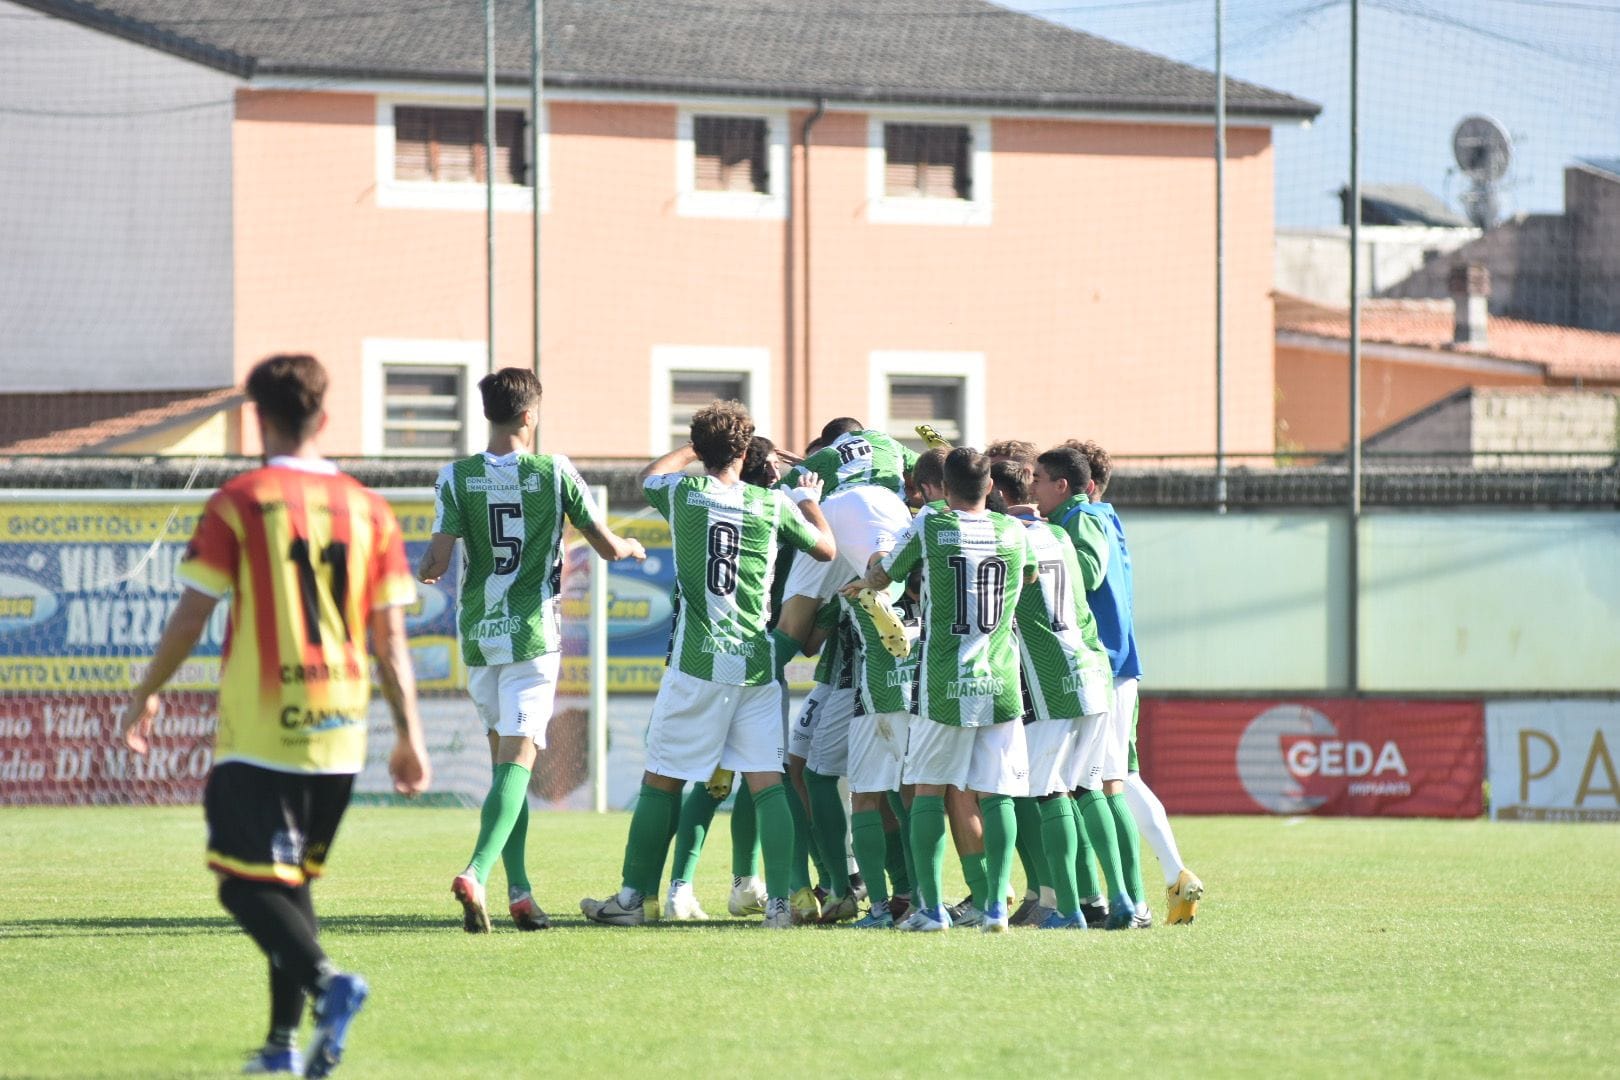 Anticipo Serie D Girone F, l'Avezzano regola 2-0 il San Nicolò Notaresco – Riviera Oggi